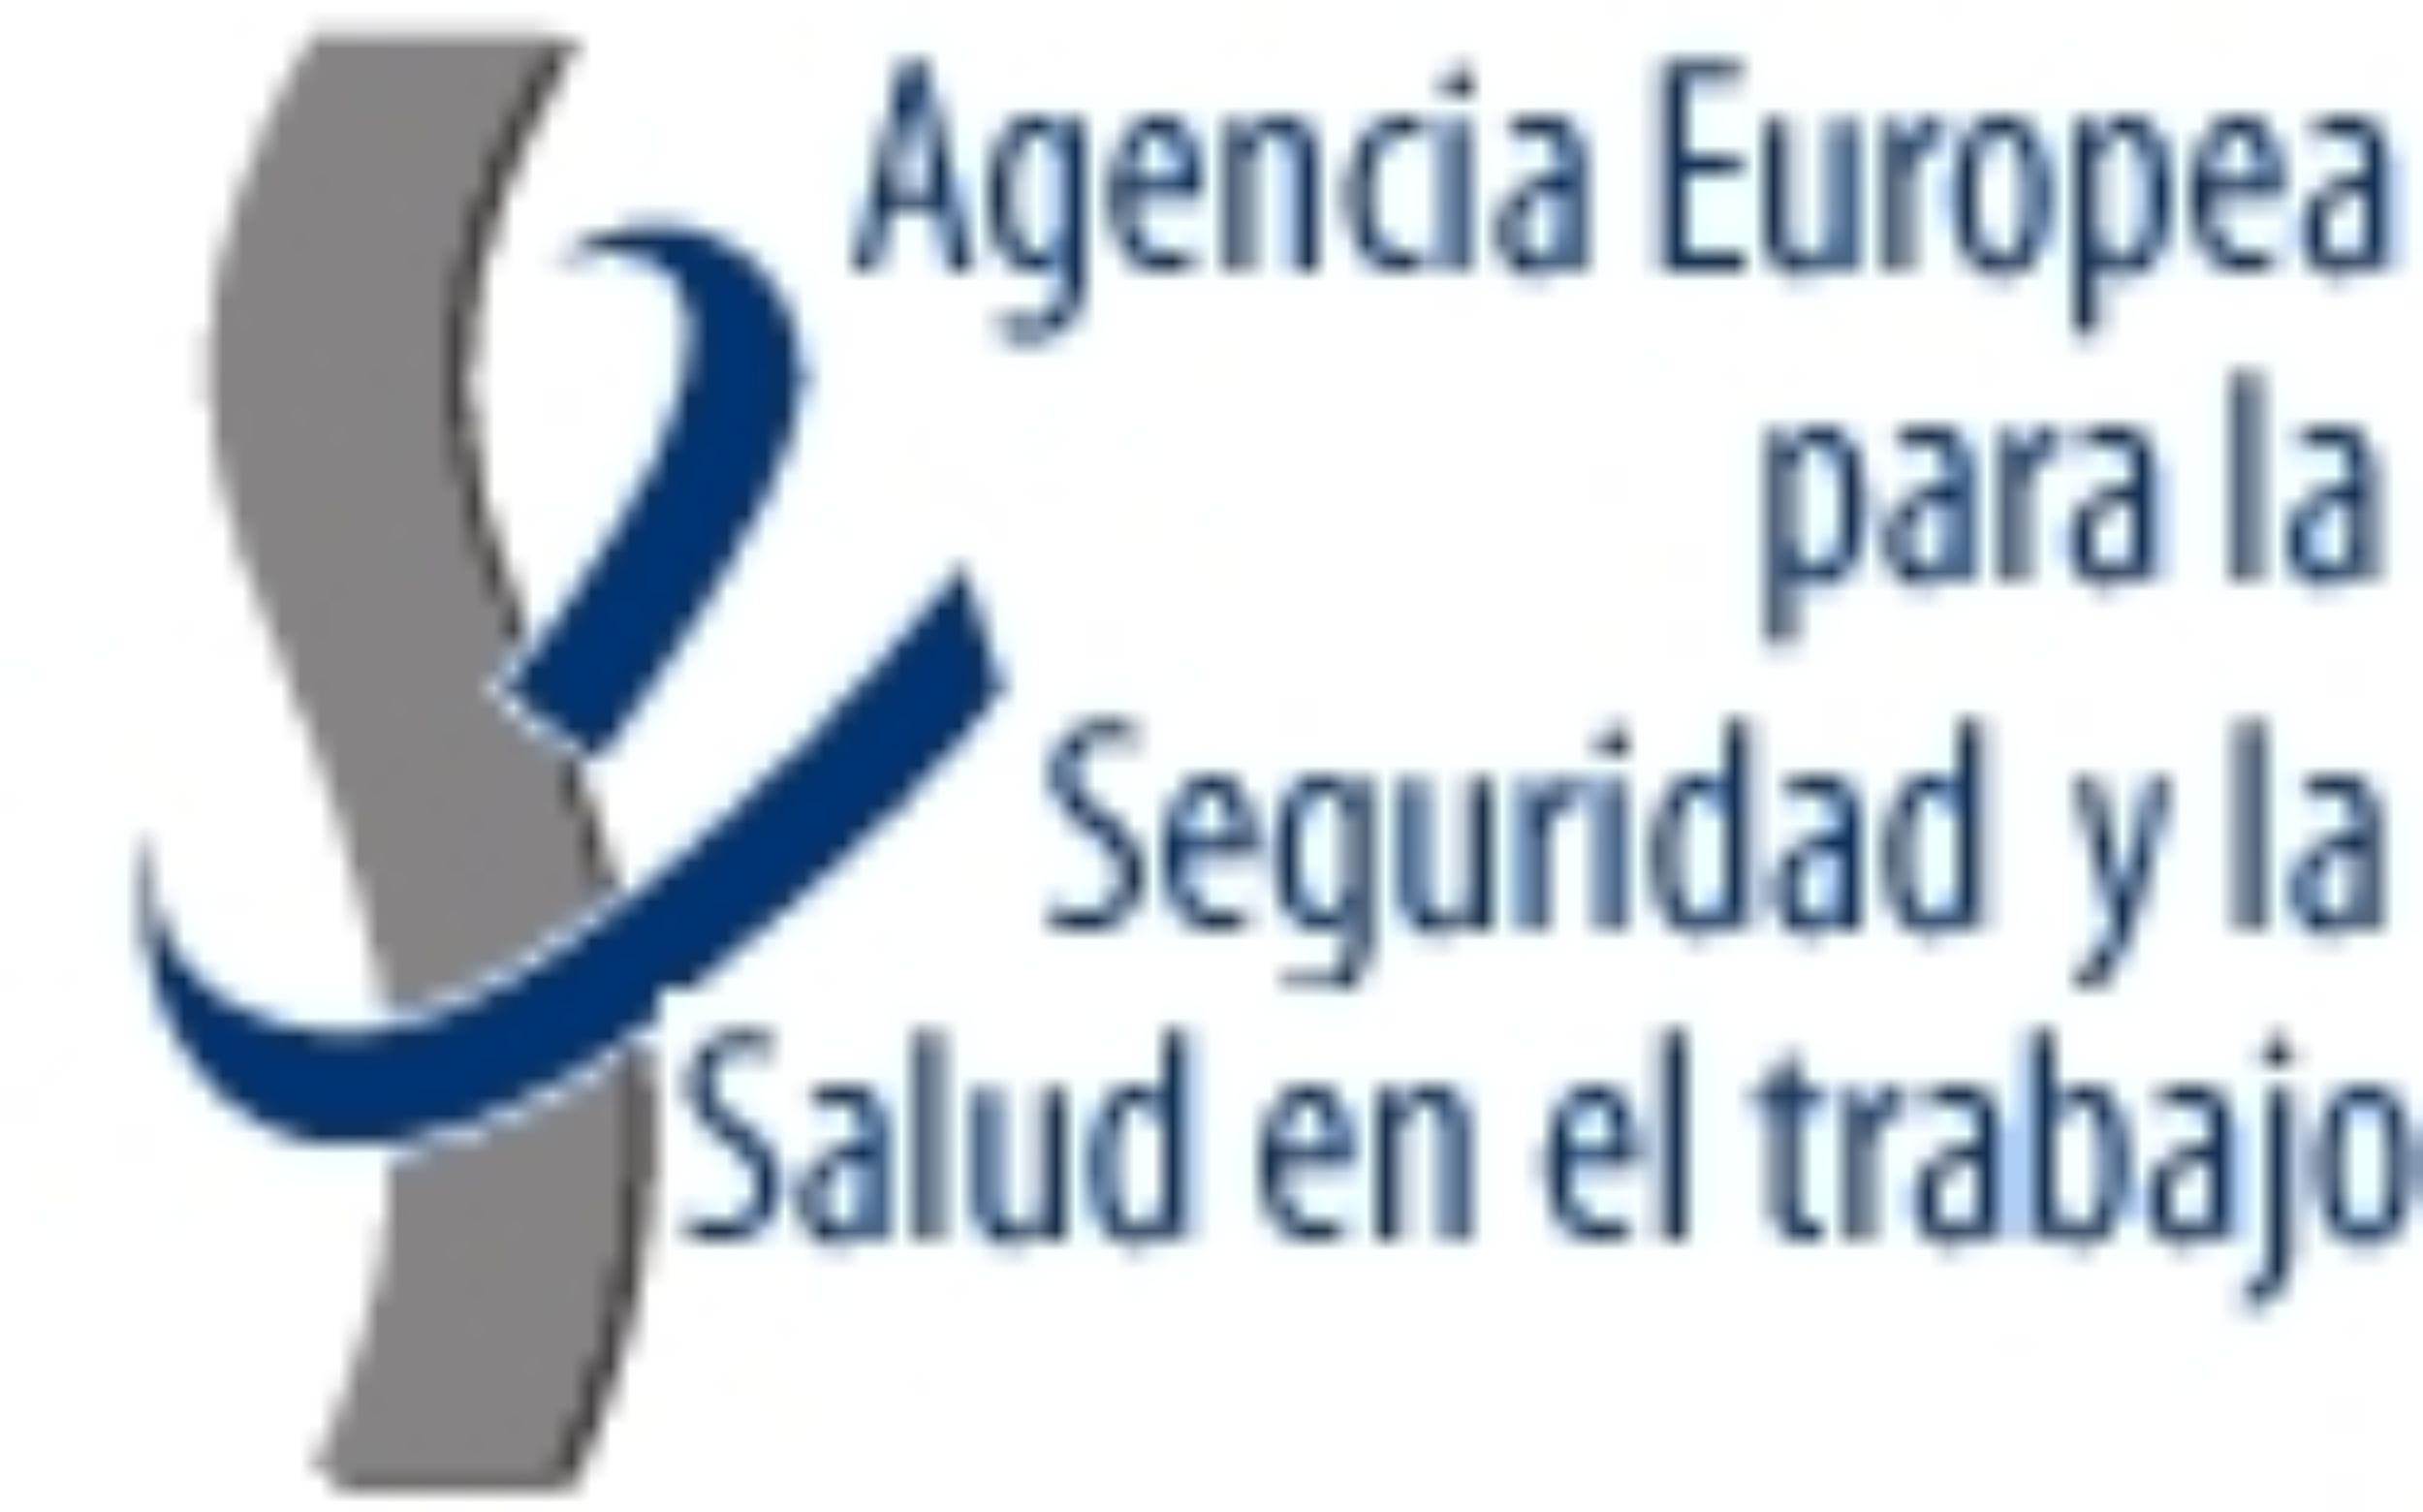 Agencia europea salud y seguridad en el trabajo